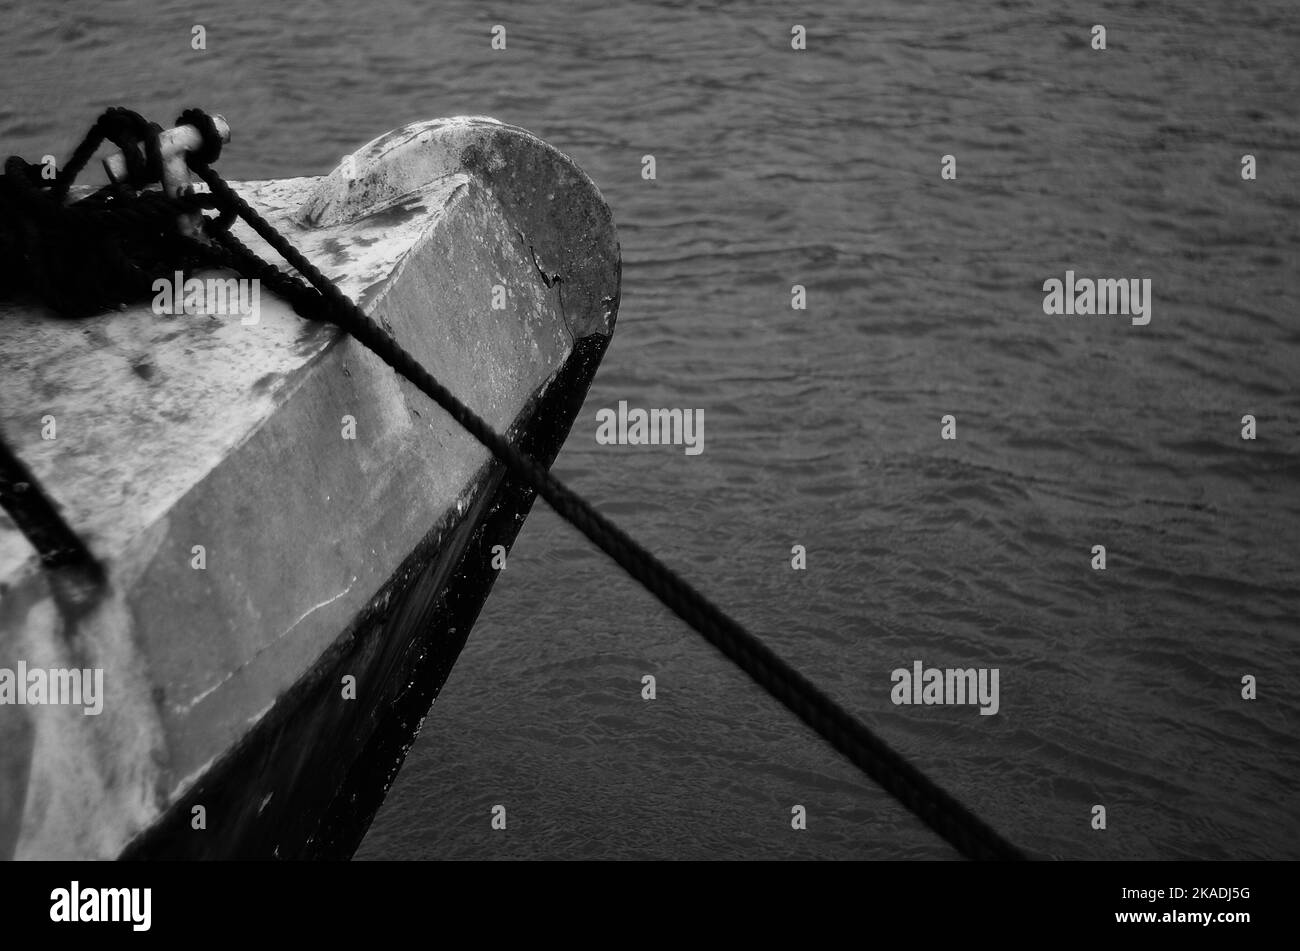 Eine Nahaufnahme eines rostigen metallischen Randes eines Bootes, das mit Seilen im Wasser eingewickelt ist und in Graustufen geschossen wurde Stockfoto